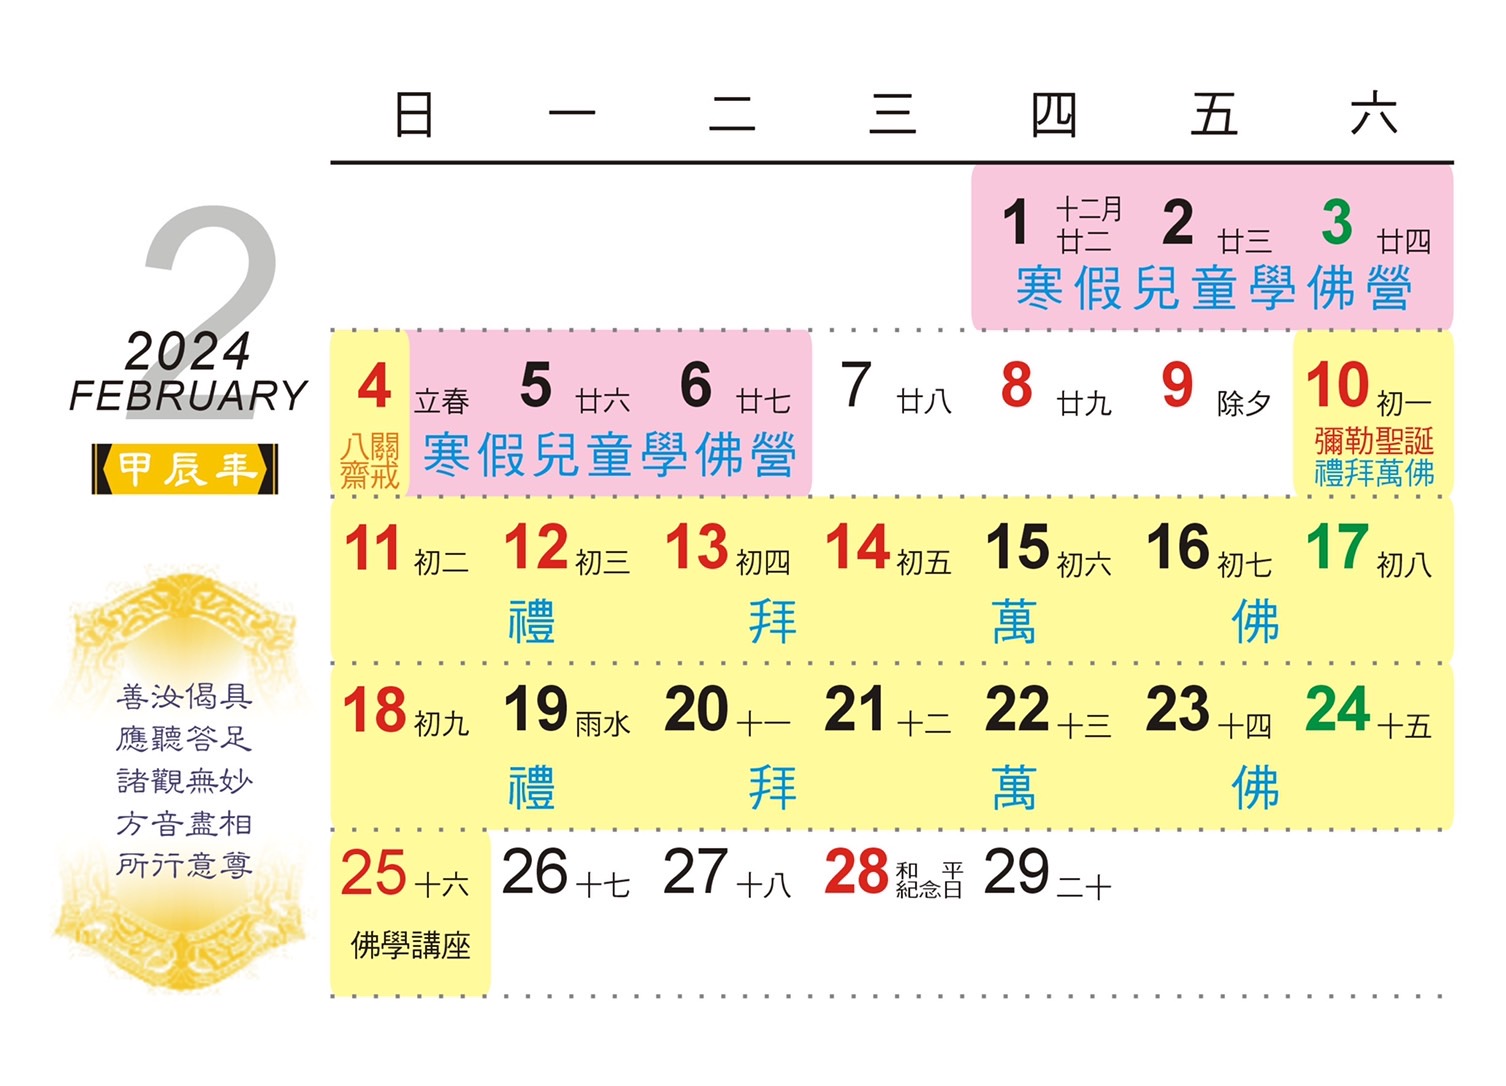 二月份行事曆